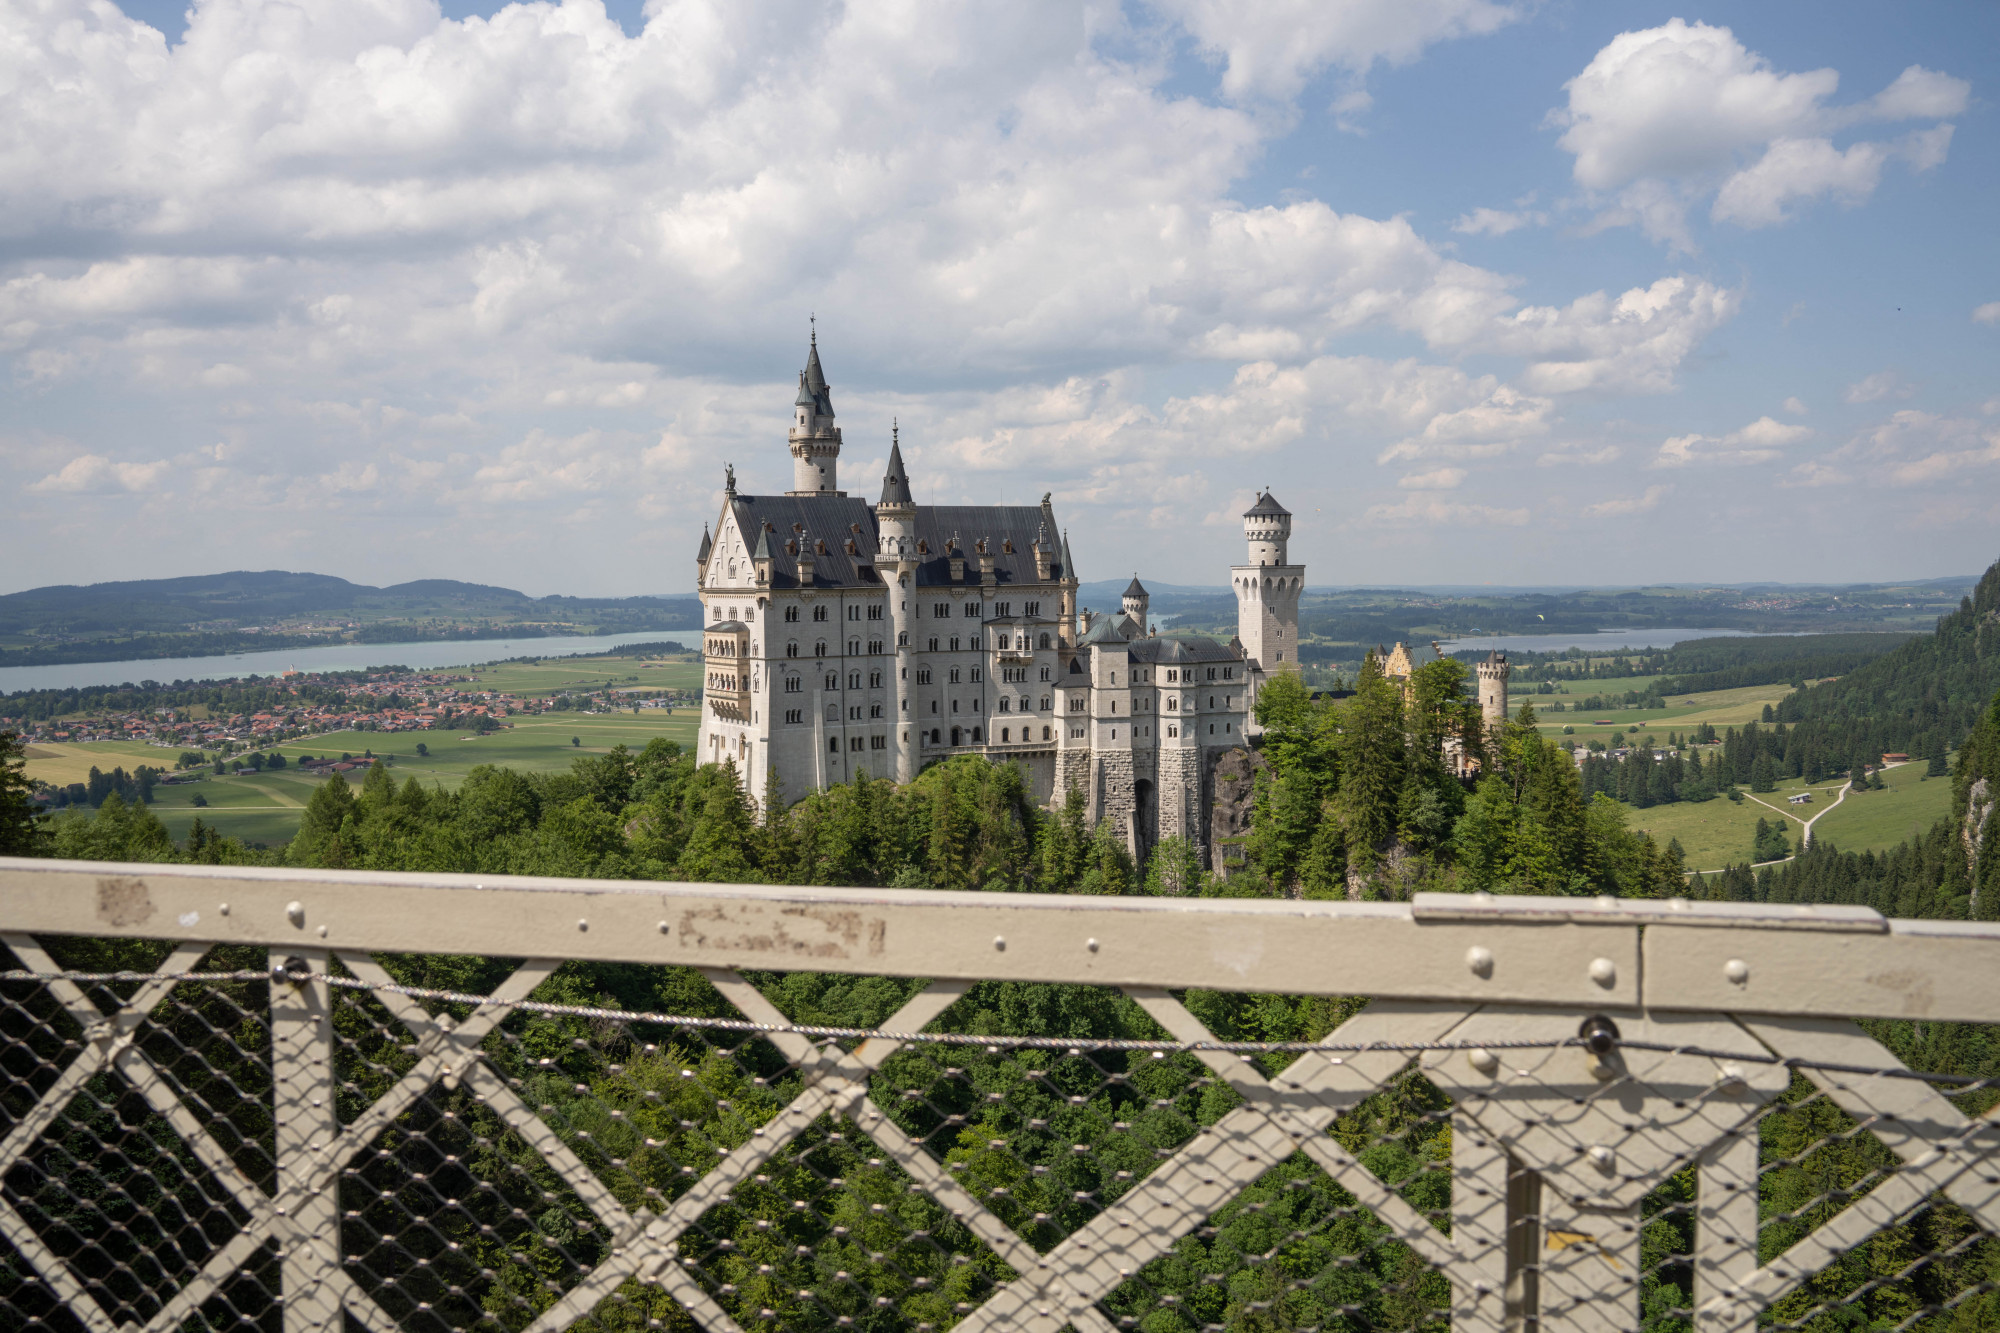 Egy férfi szakadékba lökött két lányt egy németországi kastély mellett, egyikük meghalt